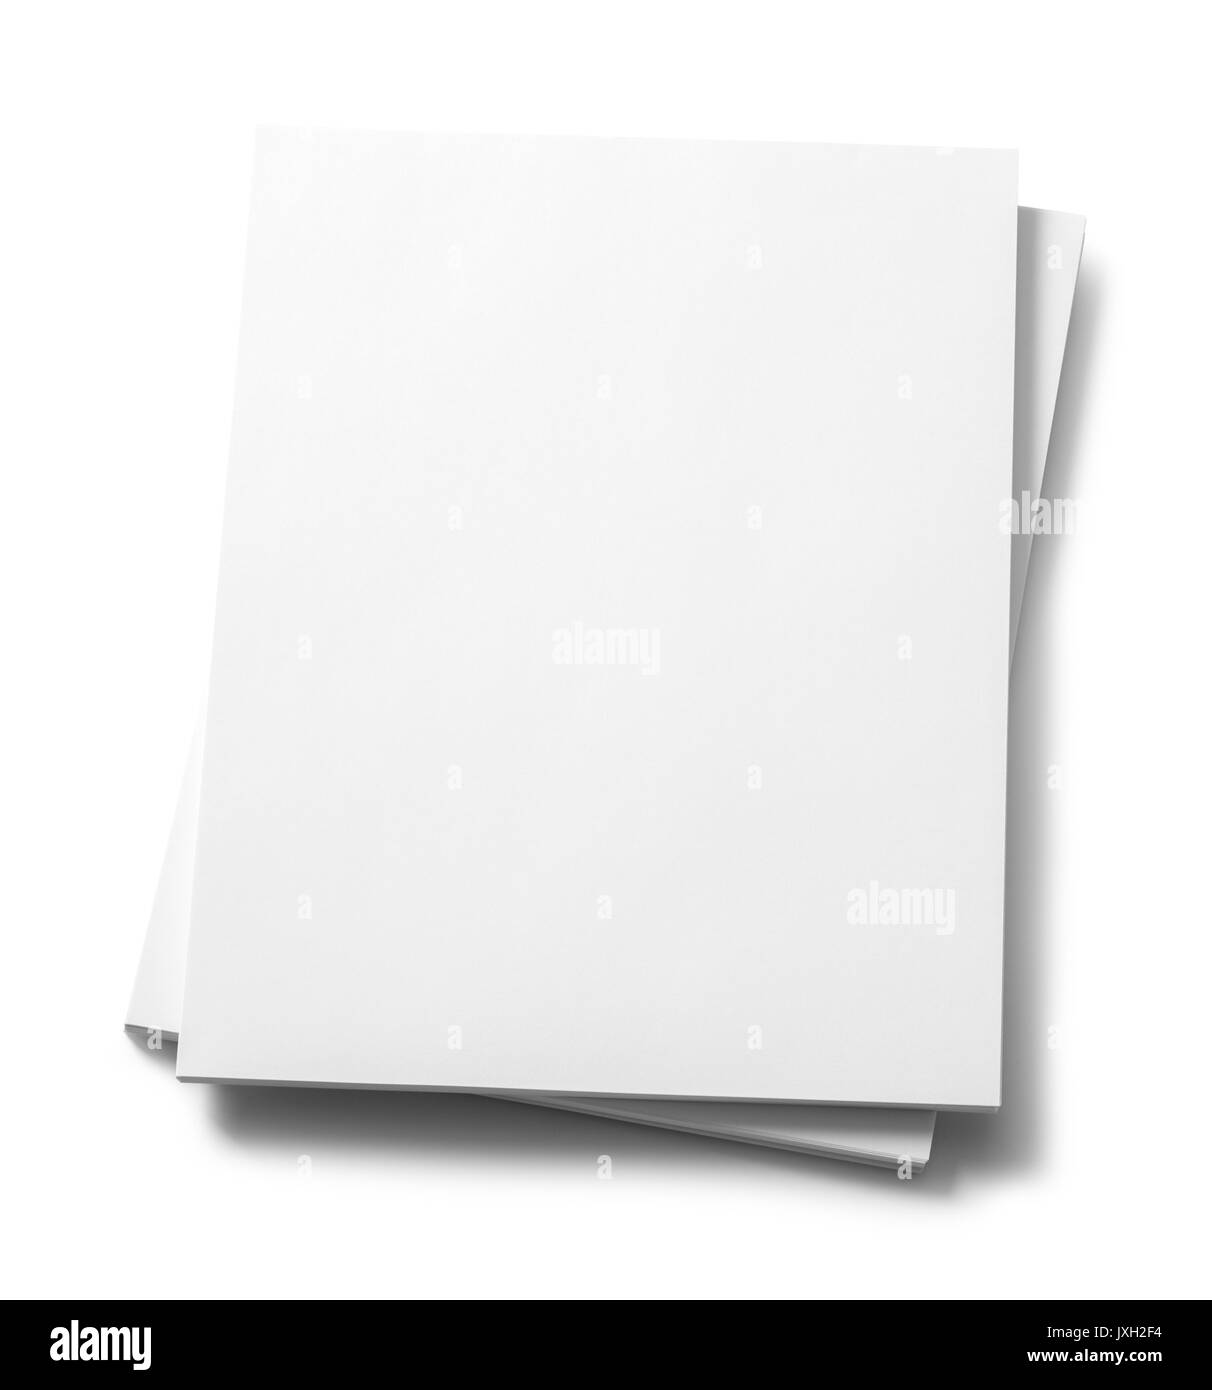 Risma di carta per la copia isolati su sfondo bianco. Foto Stock